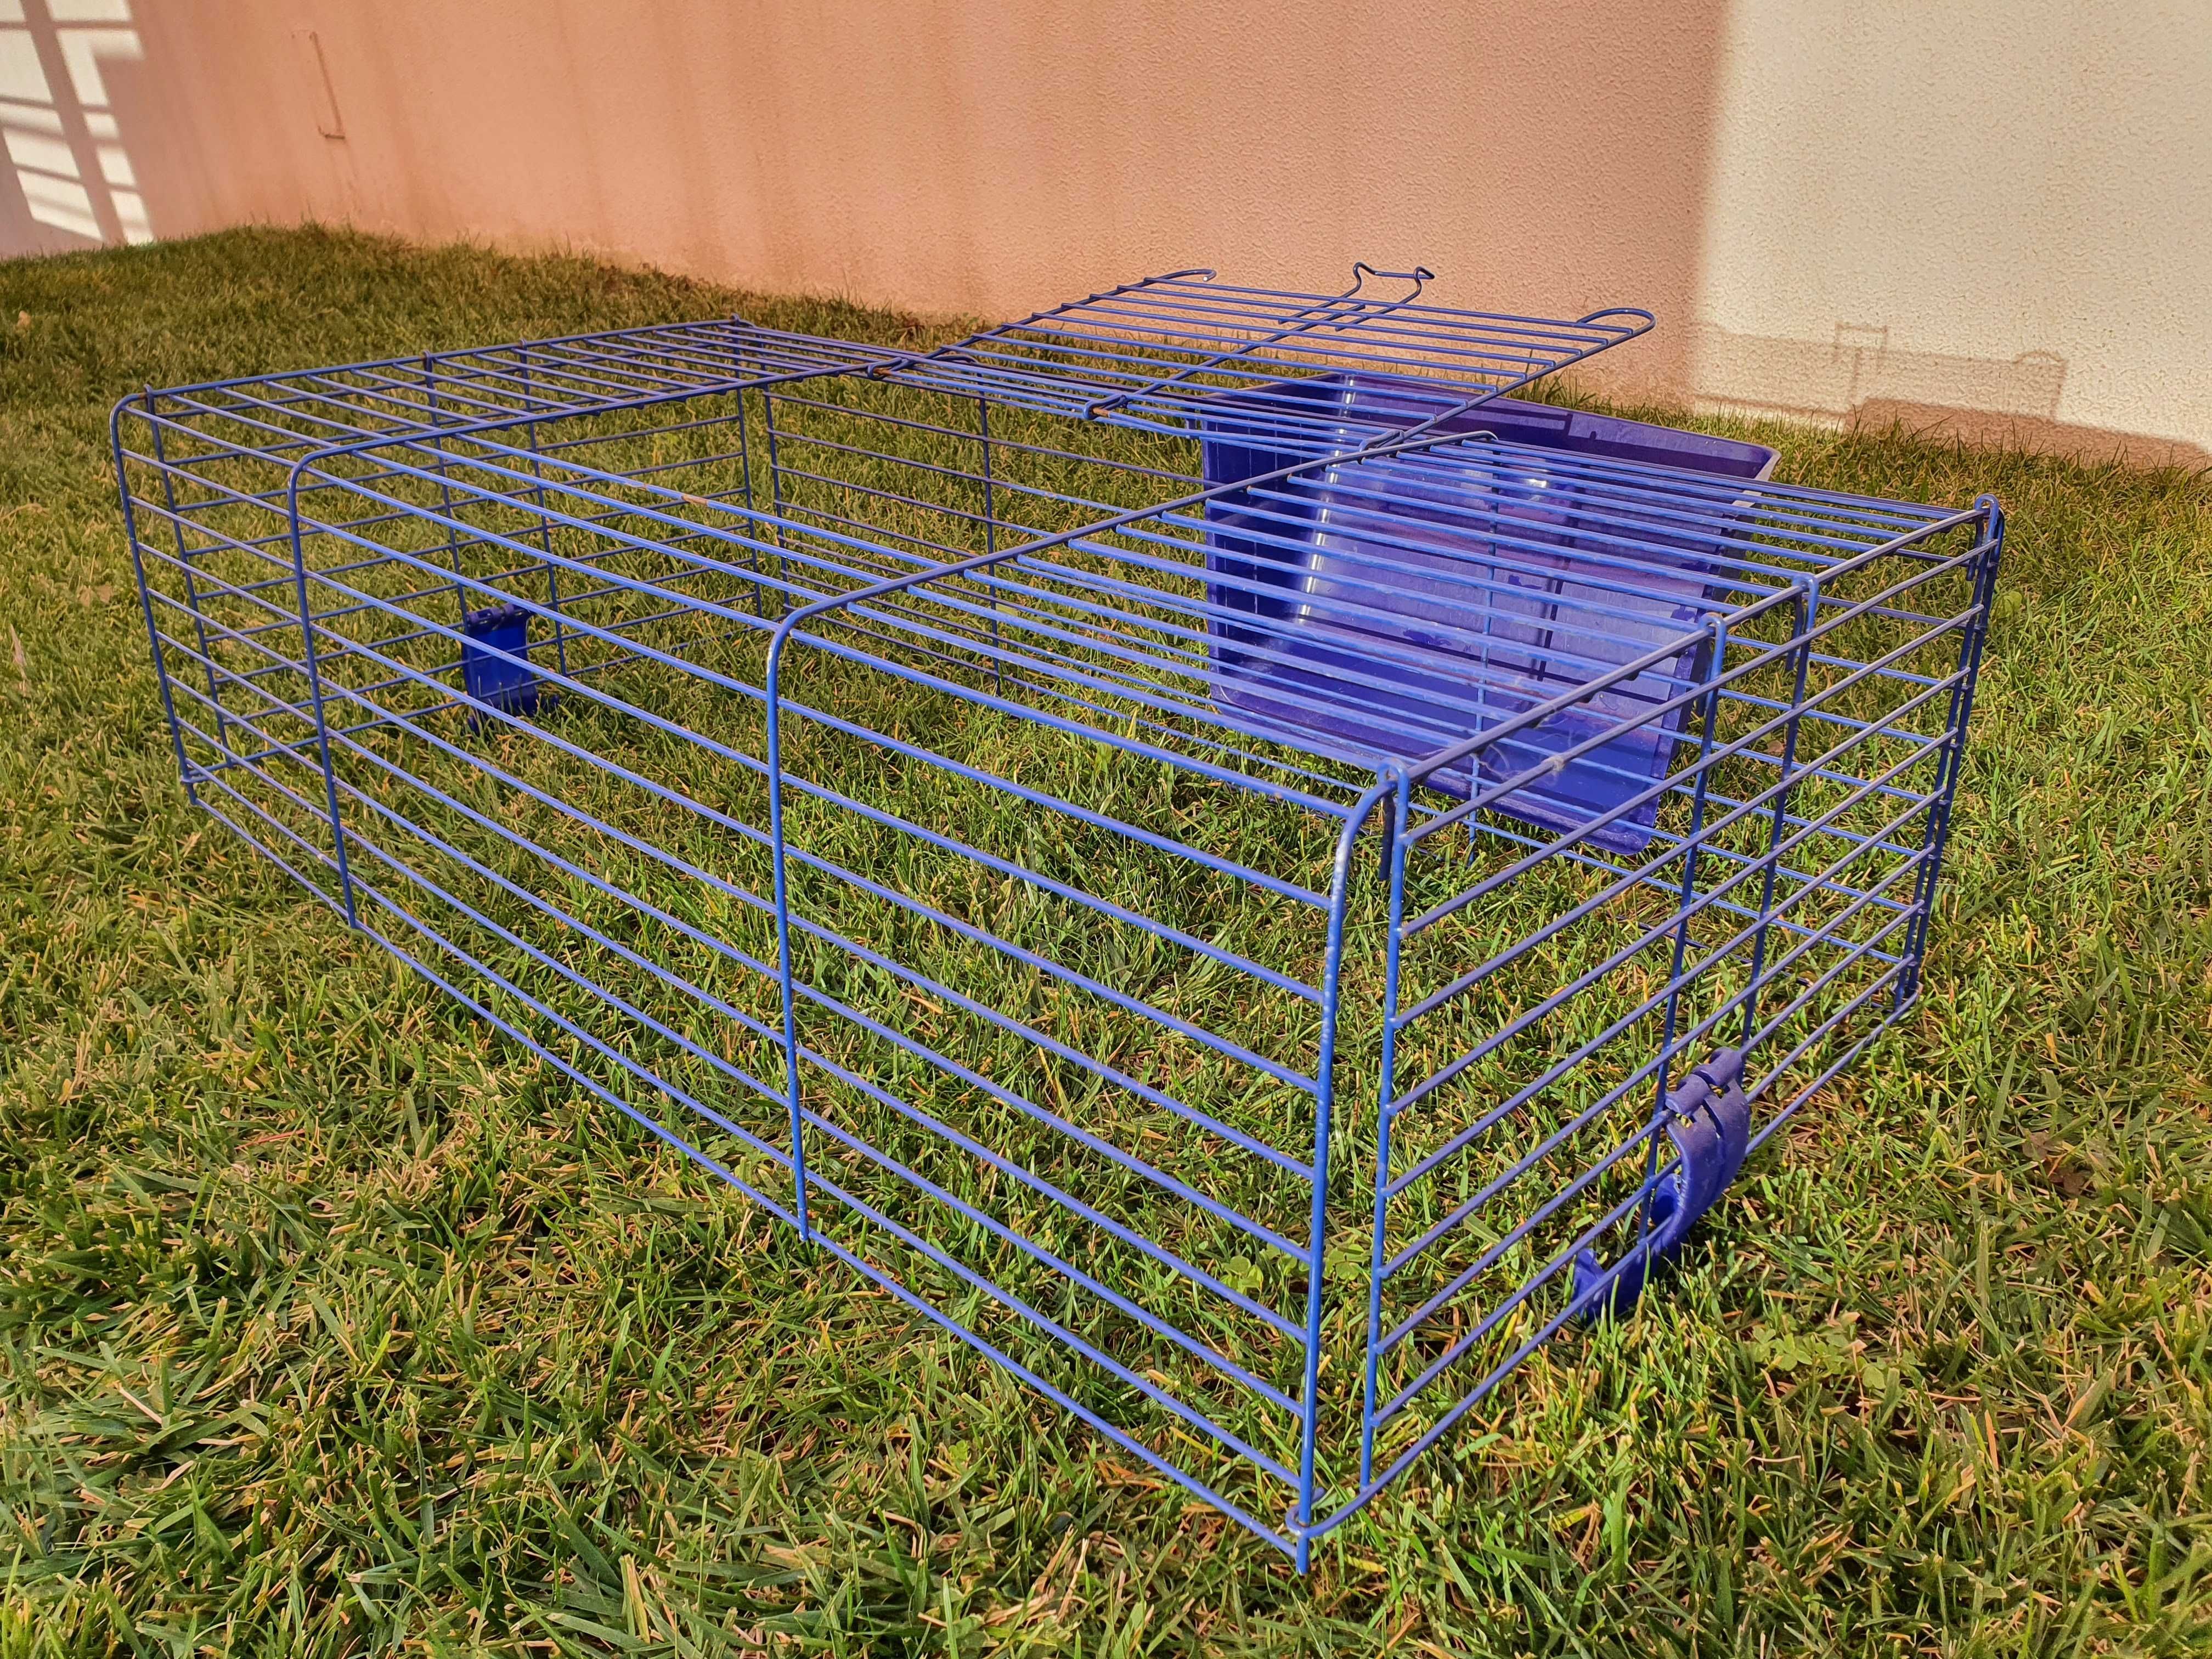 Estrutura superior de gaiola para roedores, usada, ótimo estado, 76cmx